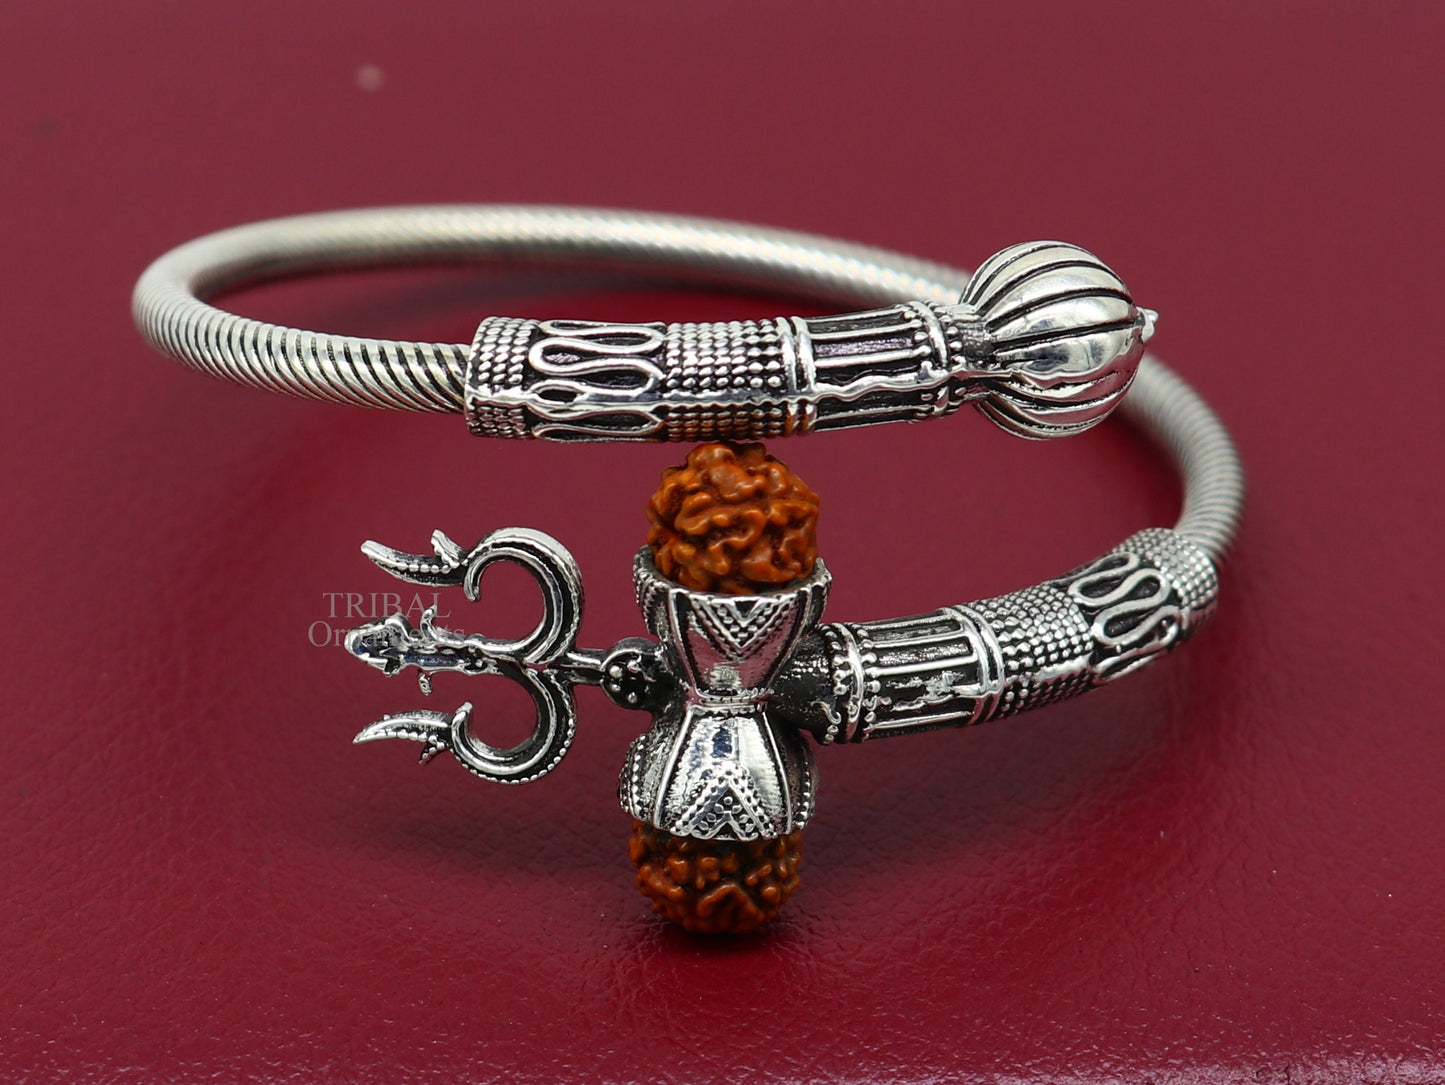 925 sterling silver handmade Shiva Trishul bangle bracelet Rudraksha kada, excellent Bahubali trident kada bracelet gift  for girl's nsk748 - TRIBAL ORNAMENTS